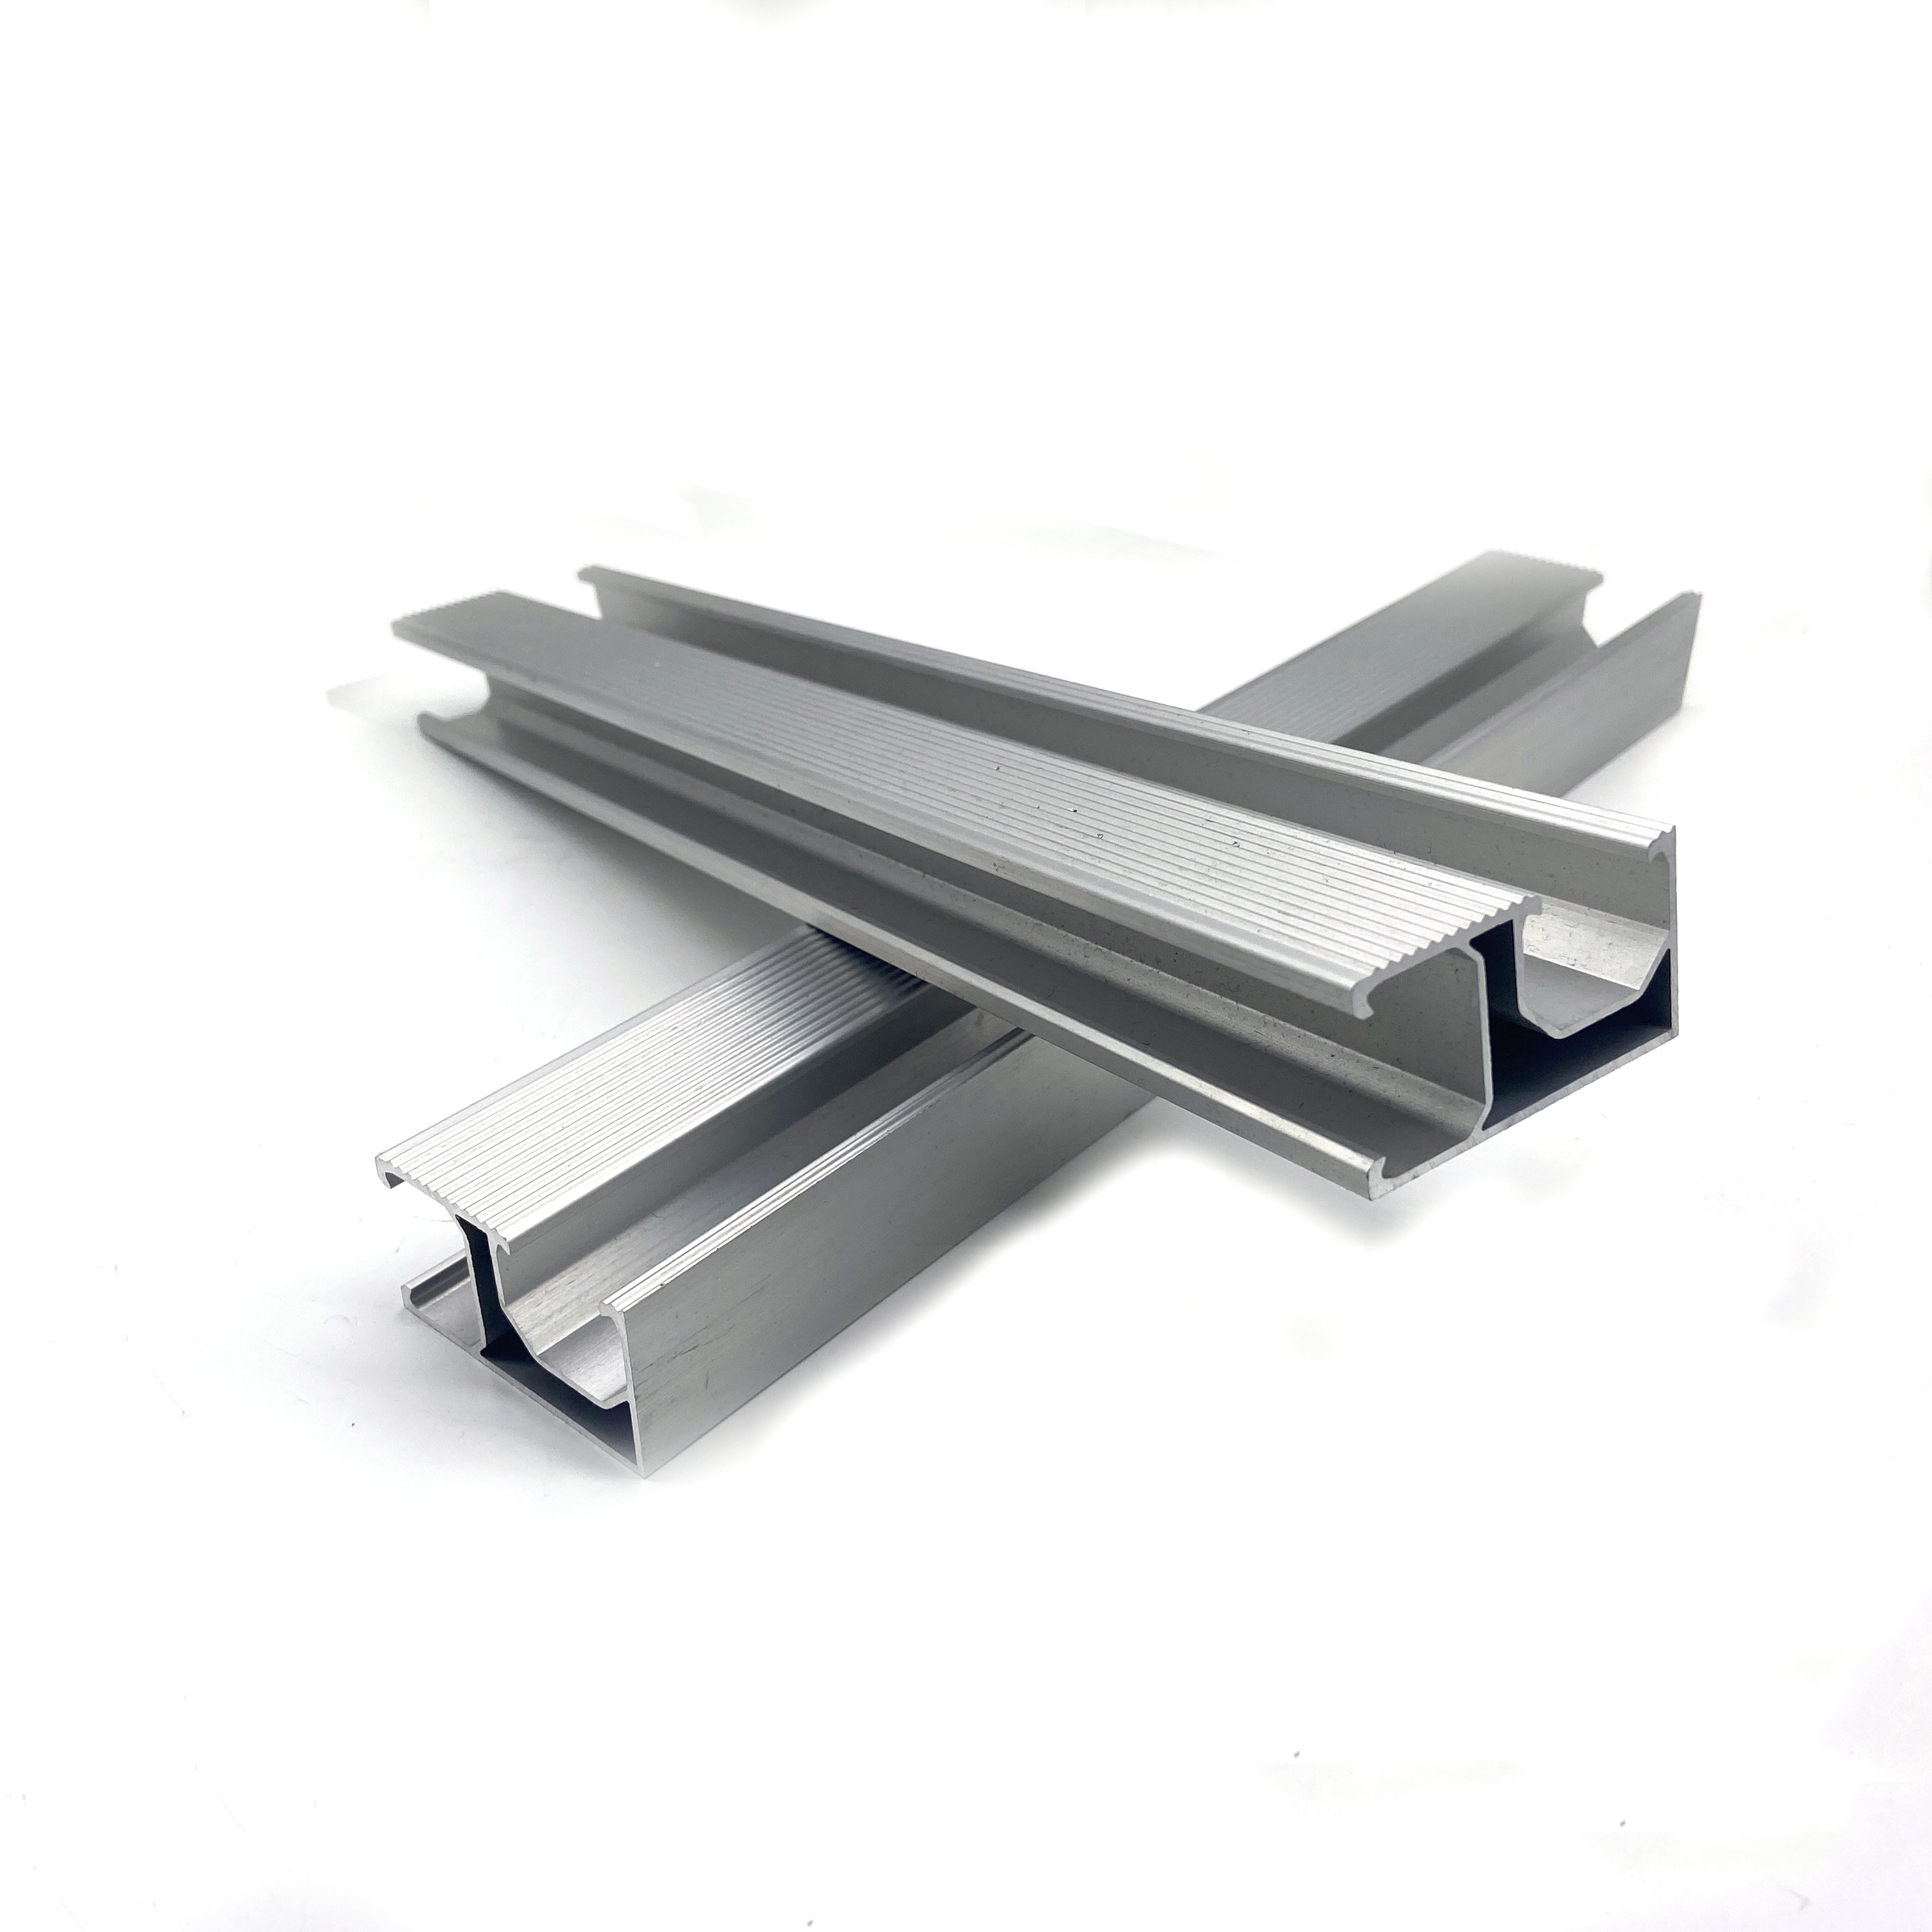 Profil d'extrusion en aluminium personnalisé anodisé de la série 6000